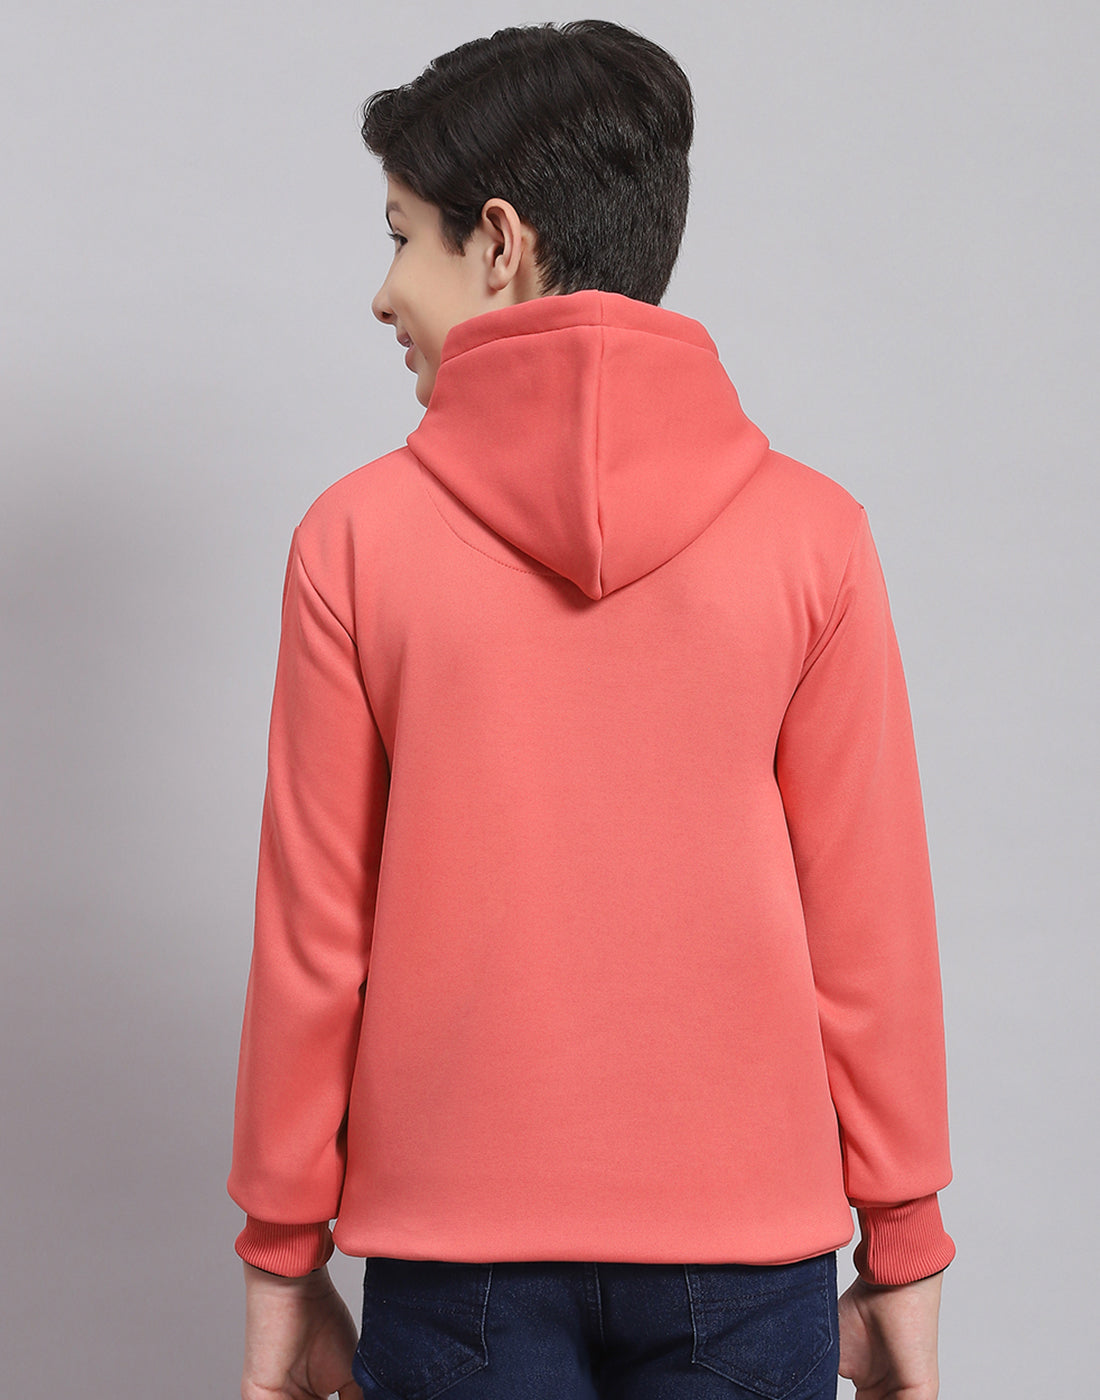 Boys Pink Printed Hooded Full Sleeve Sweatshirt